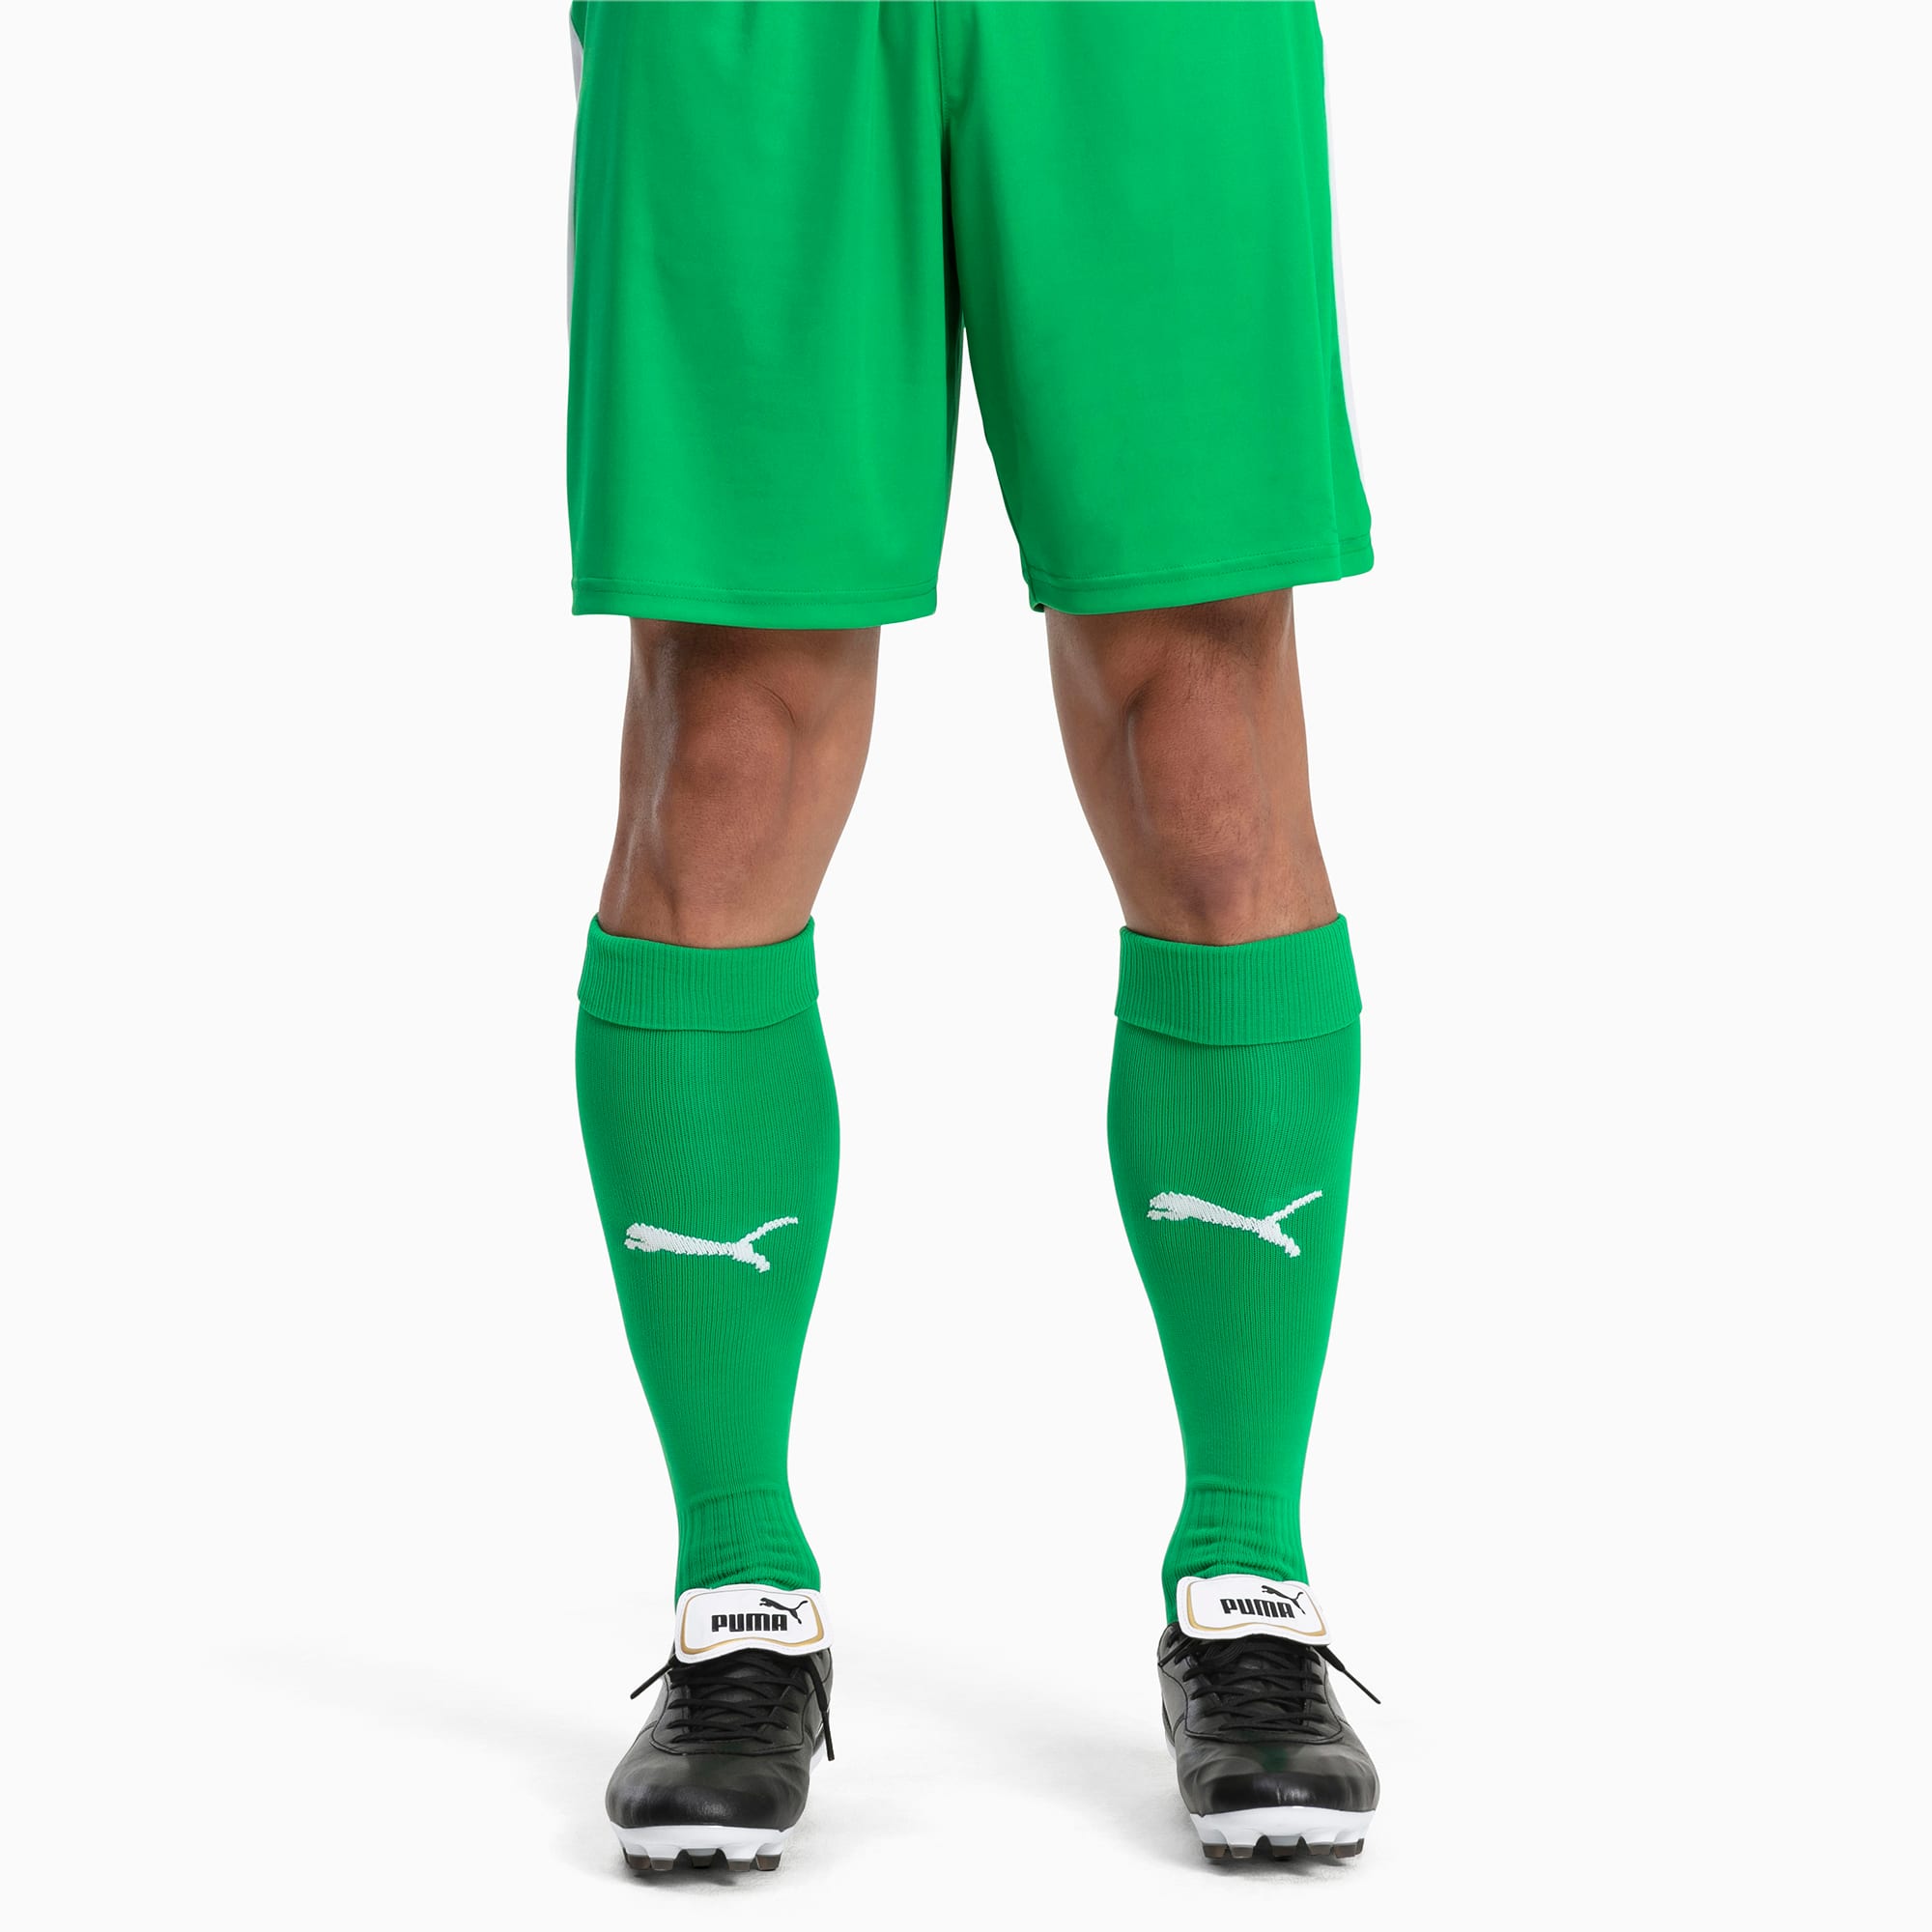 Image of PUMA Fußball Herren LIGA Core Socken | Mit Aucun | Grün/Weiß | Größe: 43-46